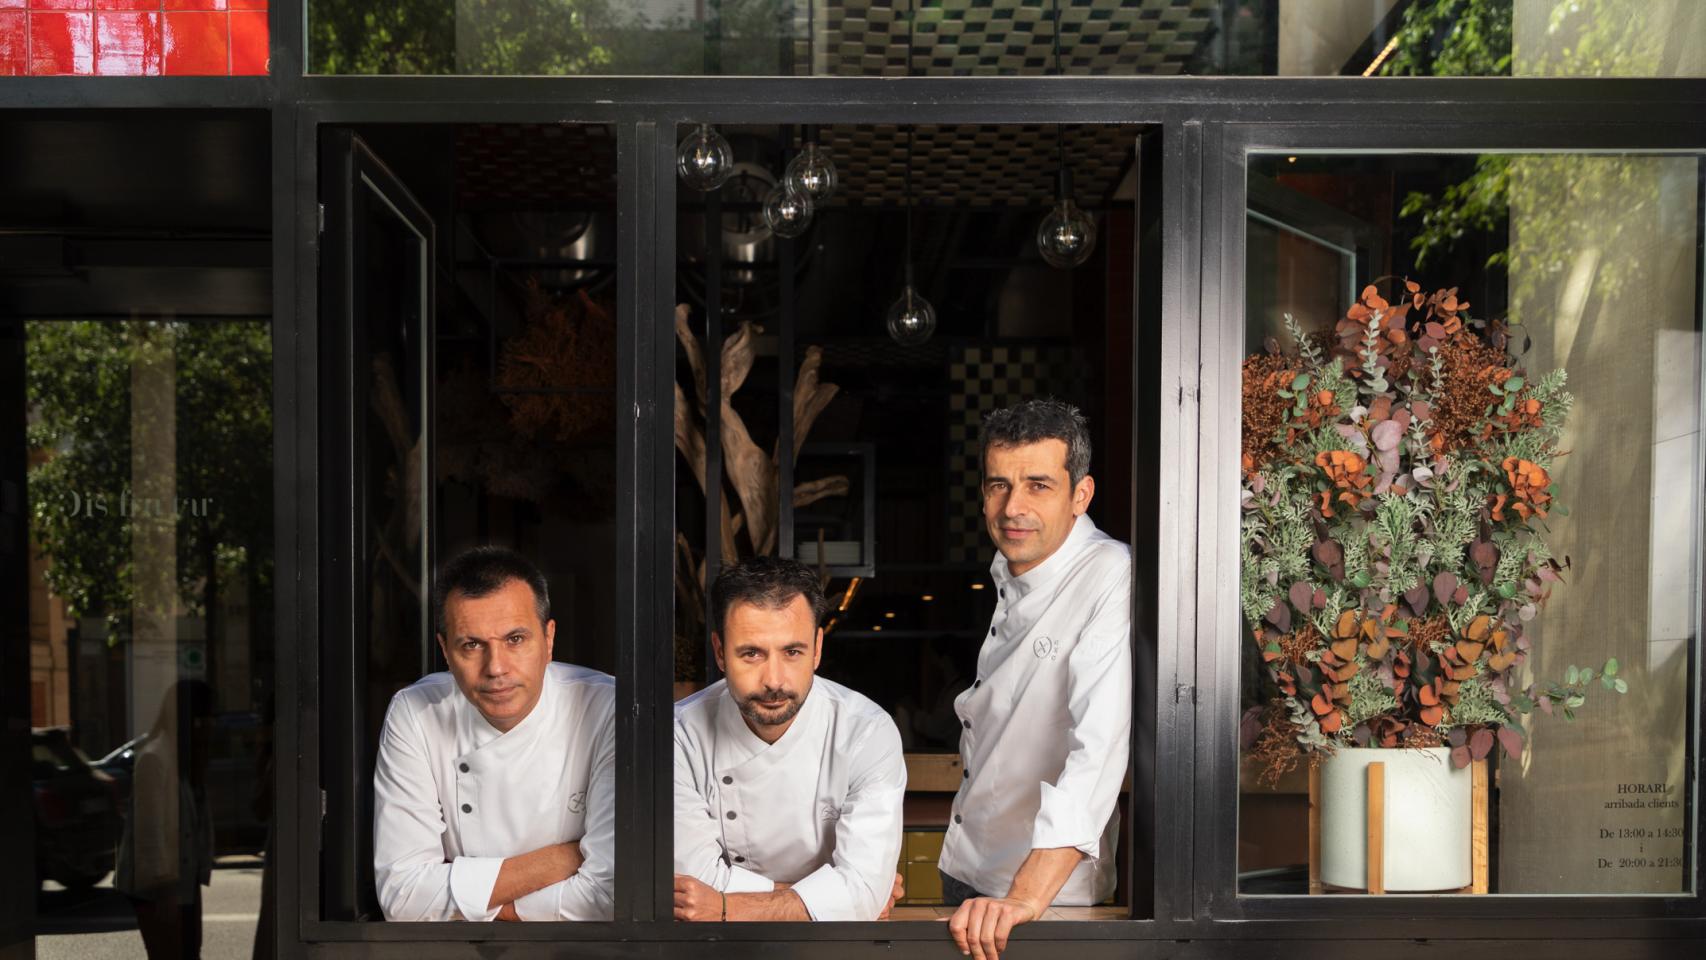 Oriol Castro, Eduard Xatruch y Mateu Casañas en su restaurante Disfrutar.